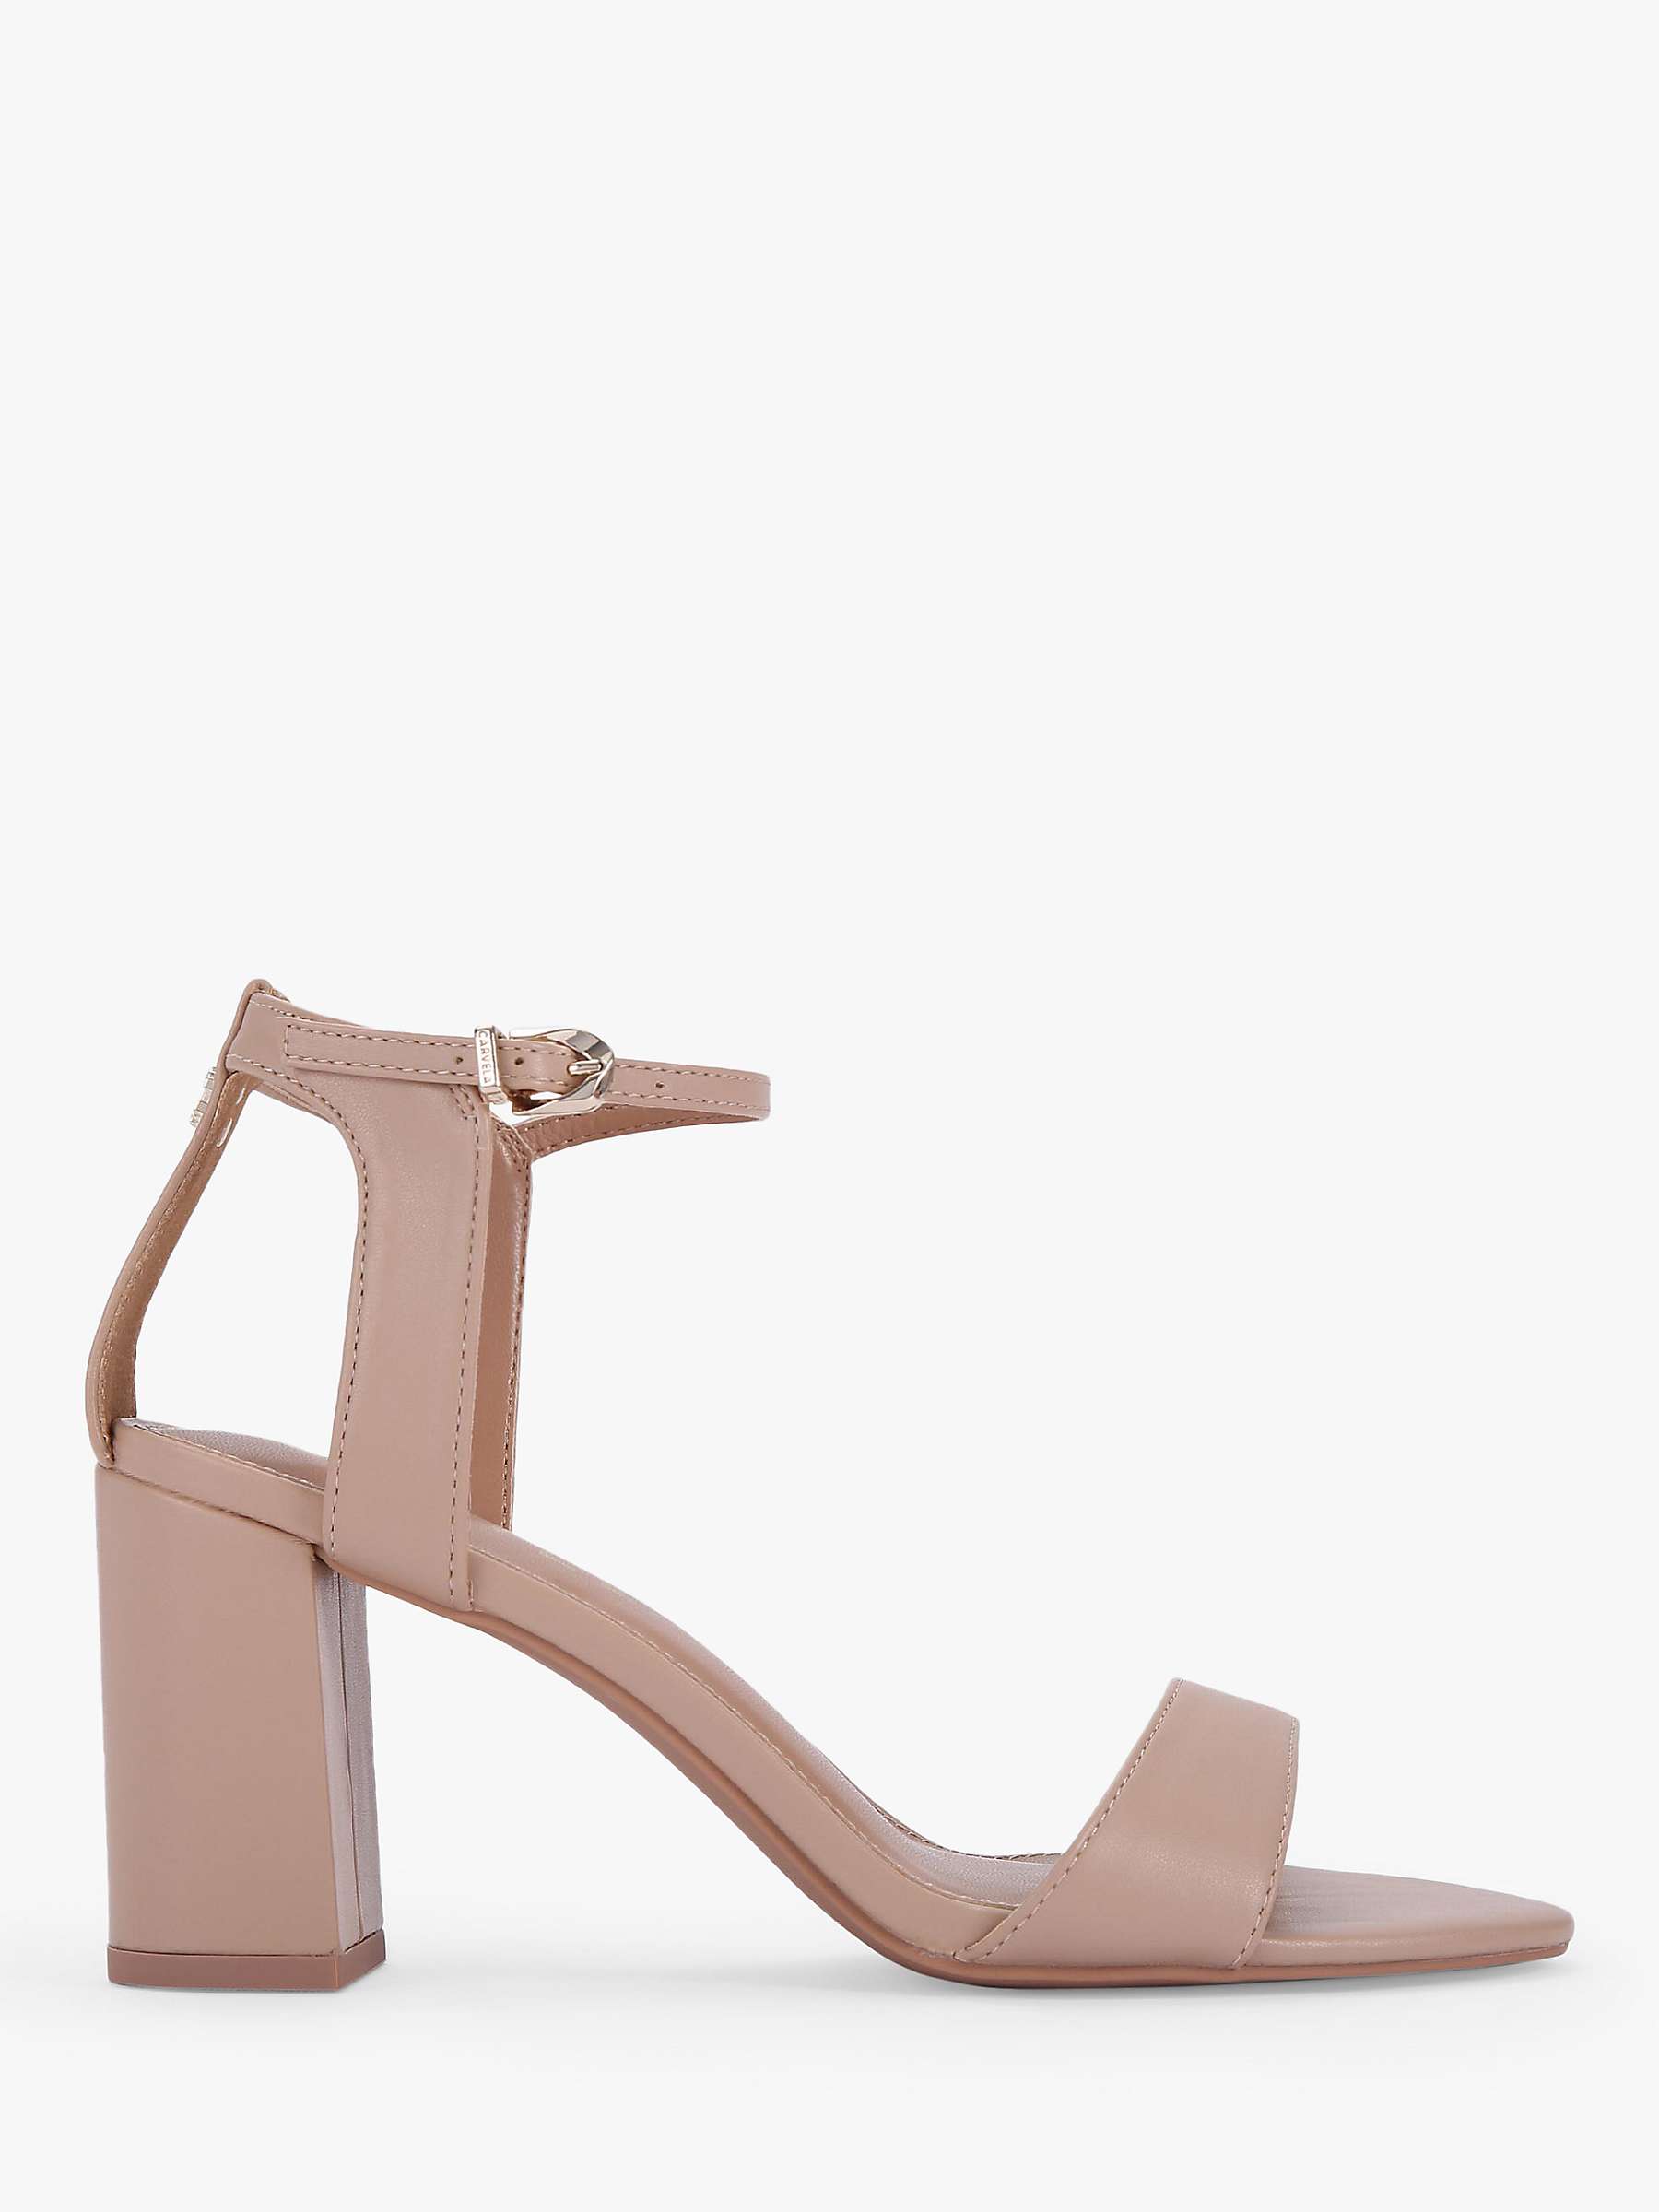 Buy Carvela Kiki Heeled Sandals, Pink Blush Online at johnlewis.com